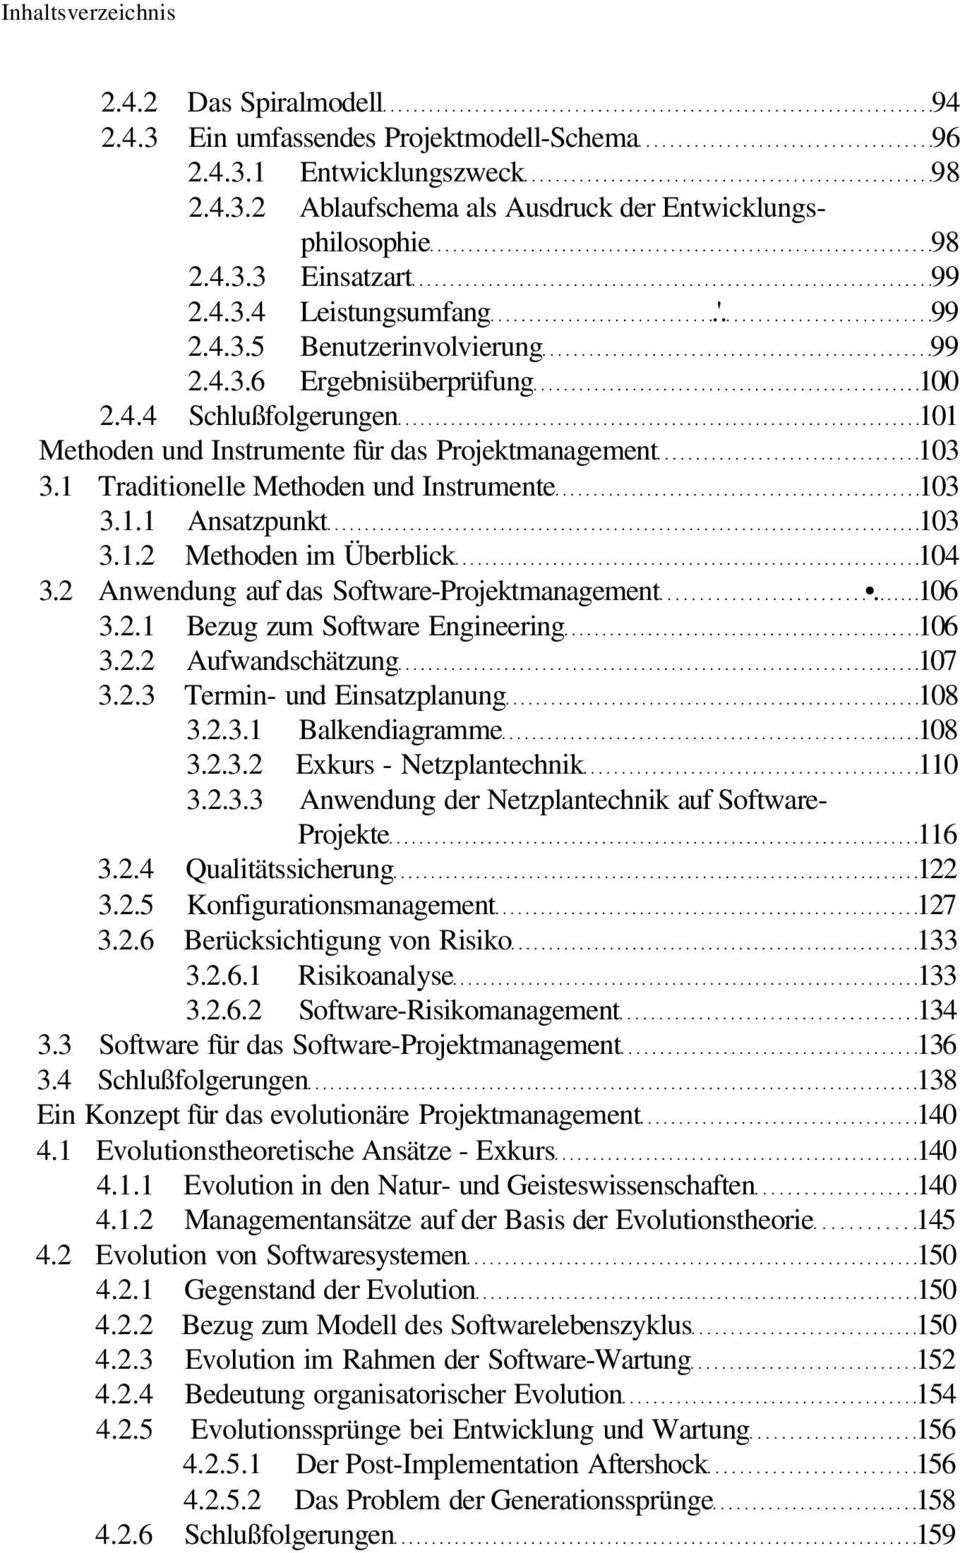 1 Traditionelle Methoden und Instrumente 103 3.1.1 Ansatzpunkt 103 3.1.2 Methoden im Überblick 104 3.2 Anwendung auf das Software-Projektmanagement. 106 3.2.1 Bezug zum Software Engineering 106 3.2.2 Aufwandschätzung 107 3.